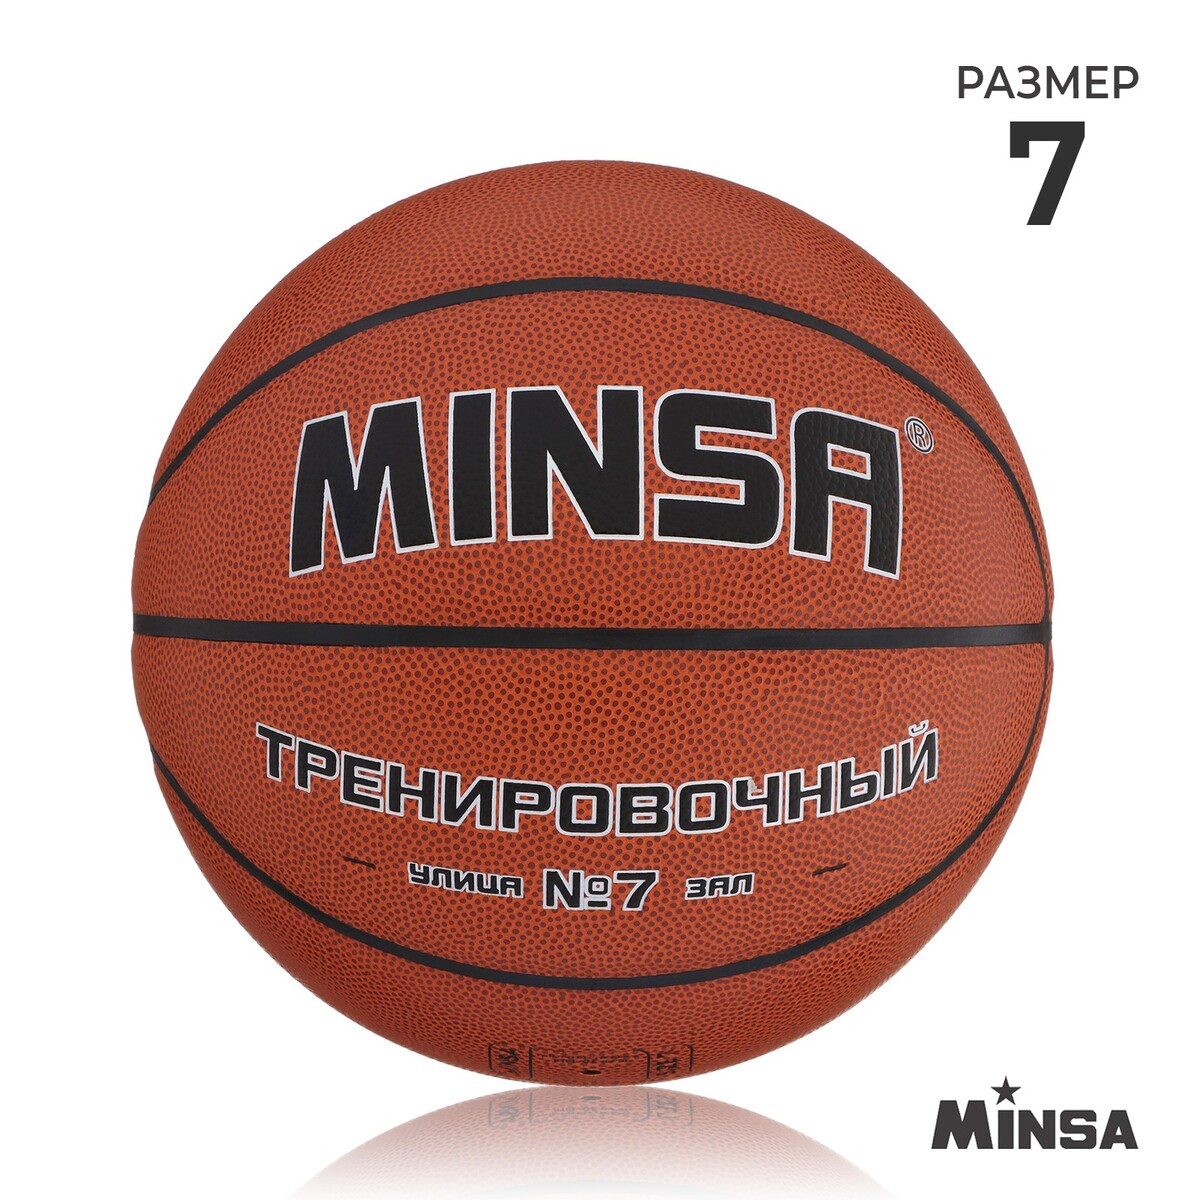 Баскетбольный мяч minsa, тренировочный, pu, клееный, 8 панелей, р. 7 мяч баскетбольный minsa str 047 пвх клееный 8 панелей р 7